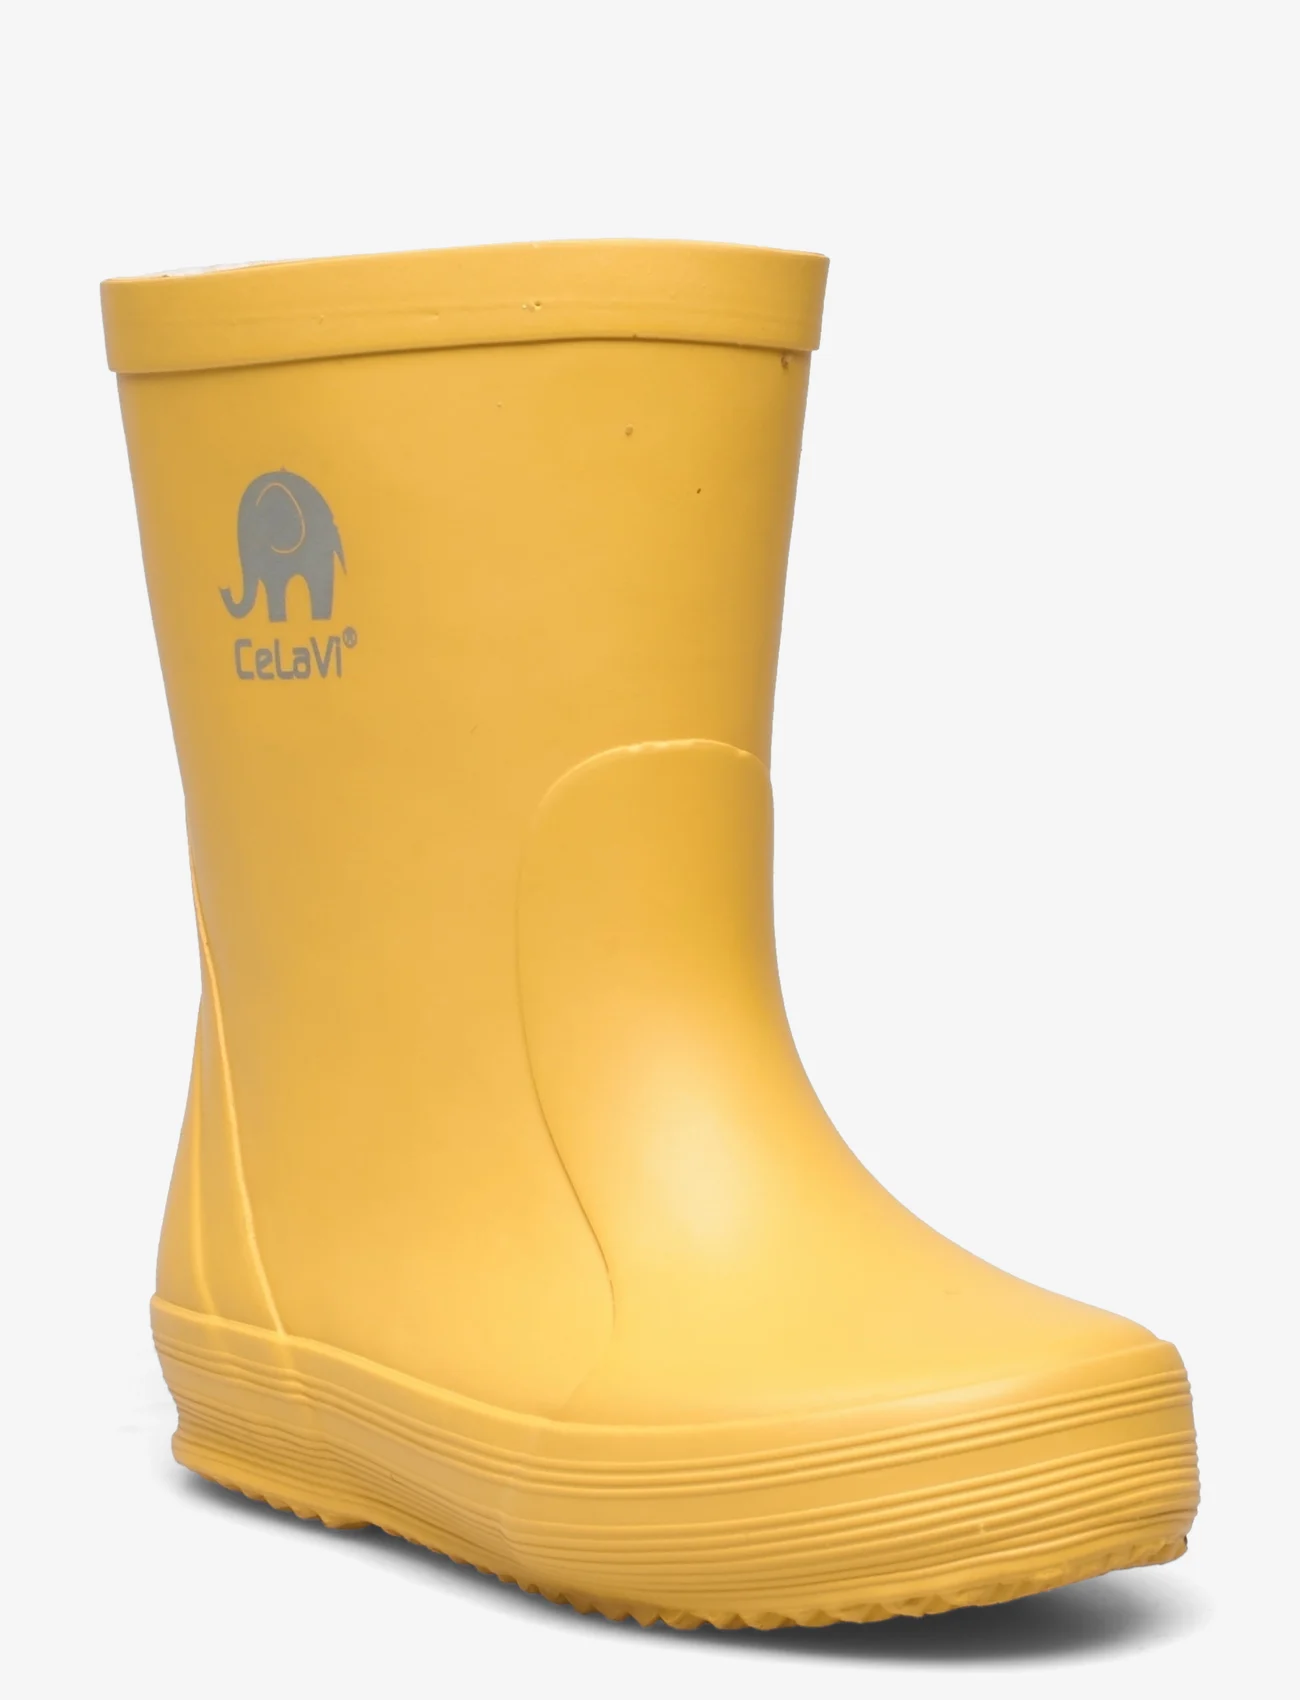 CeLaVi - Basic wellies -solid - gummistøvler uten linjer - mineral yellow - 0